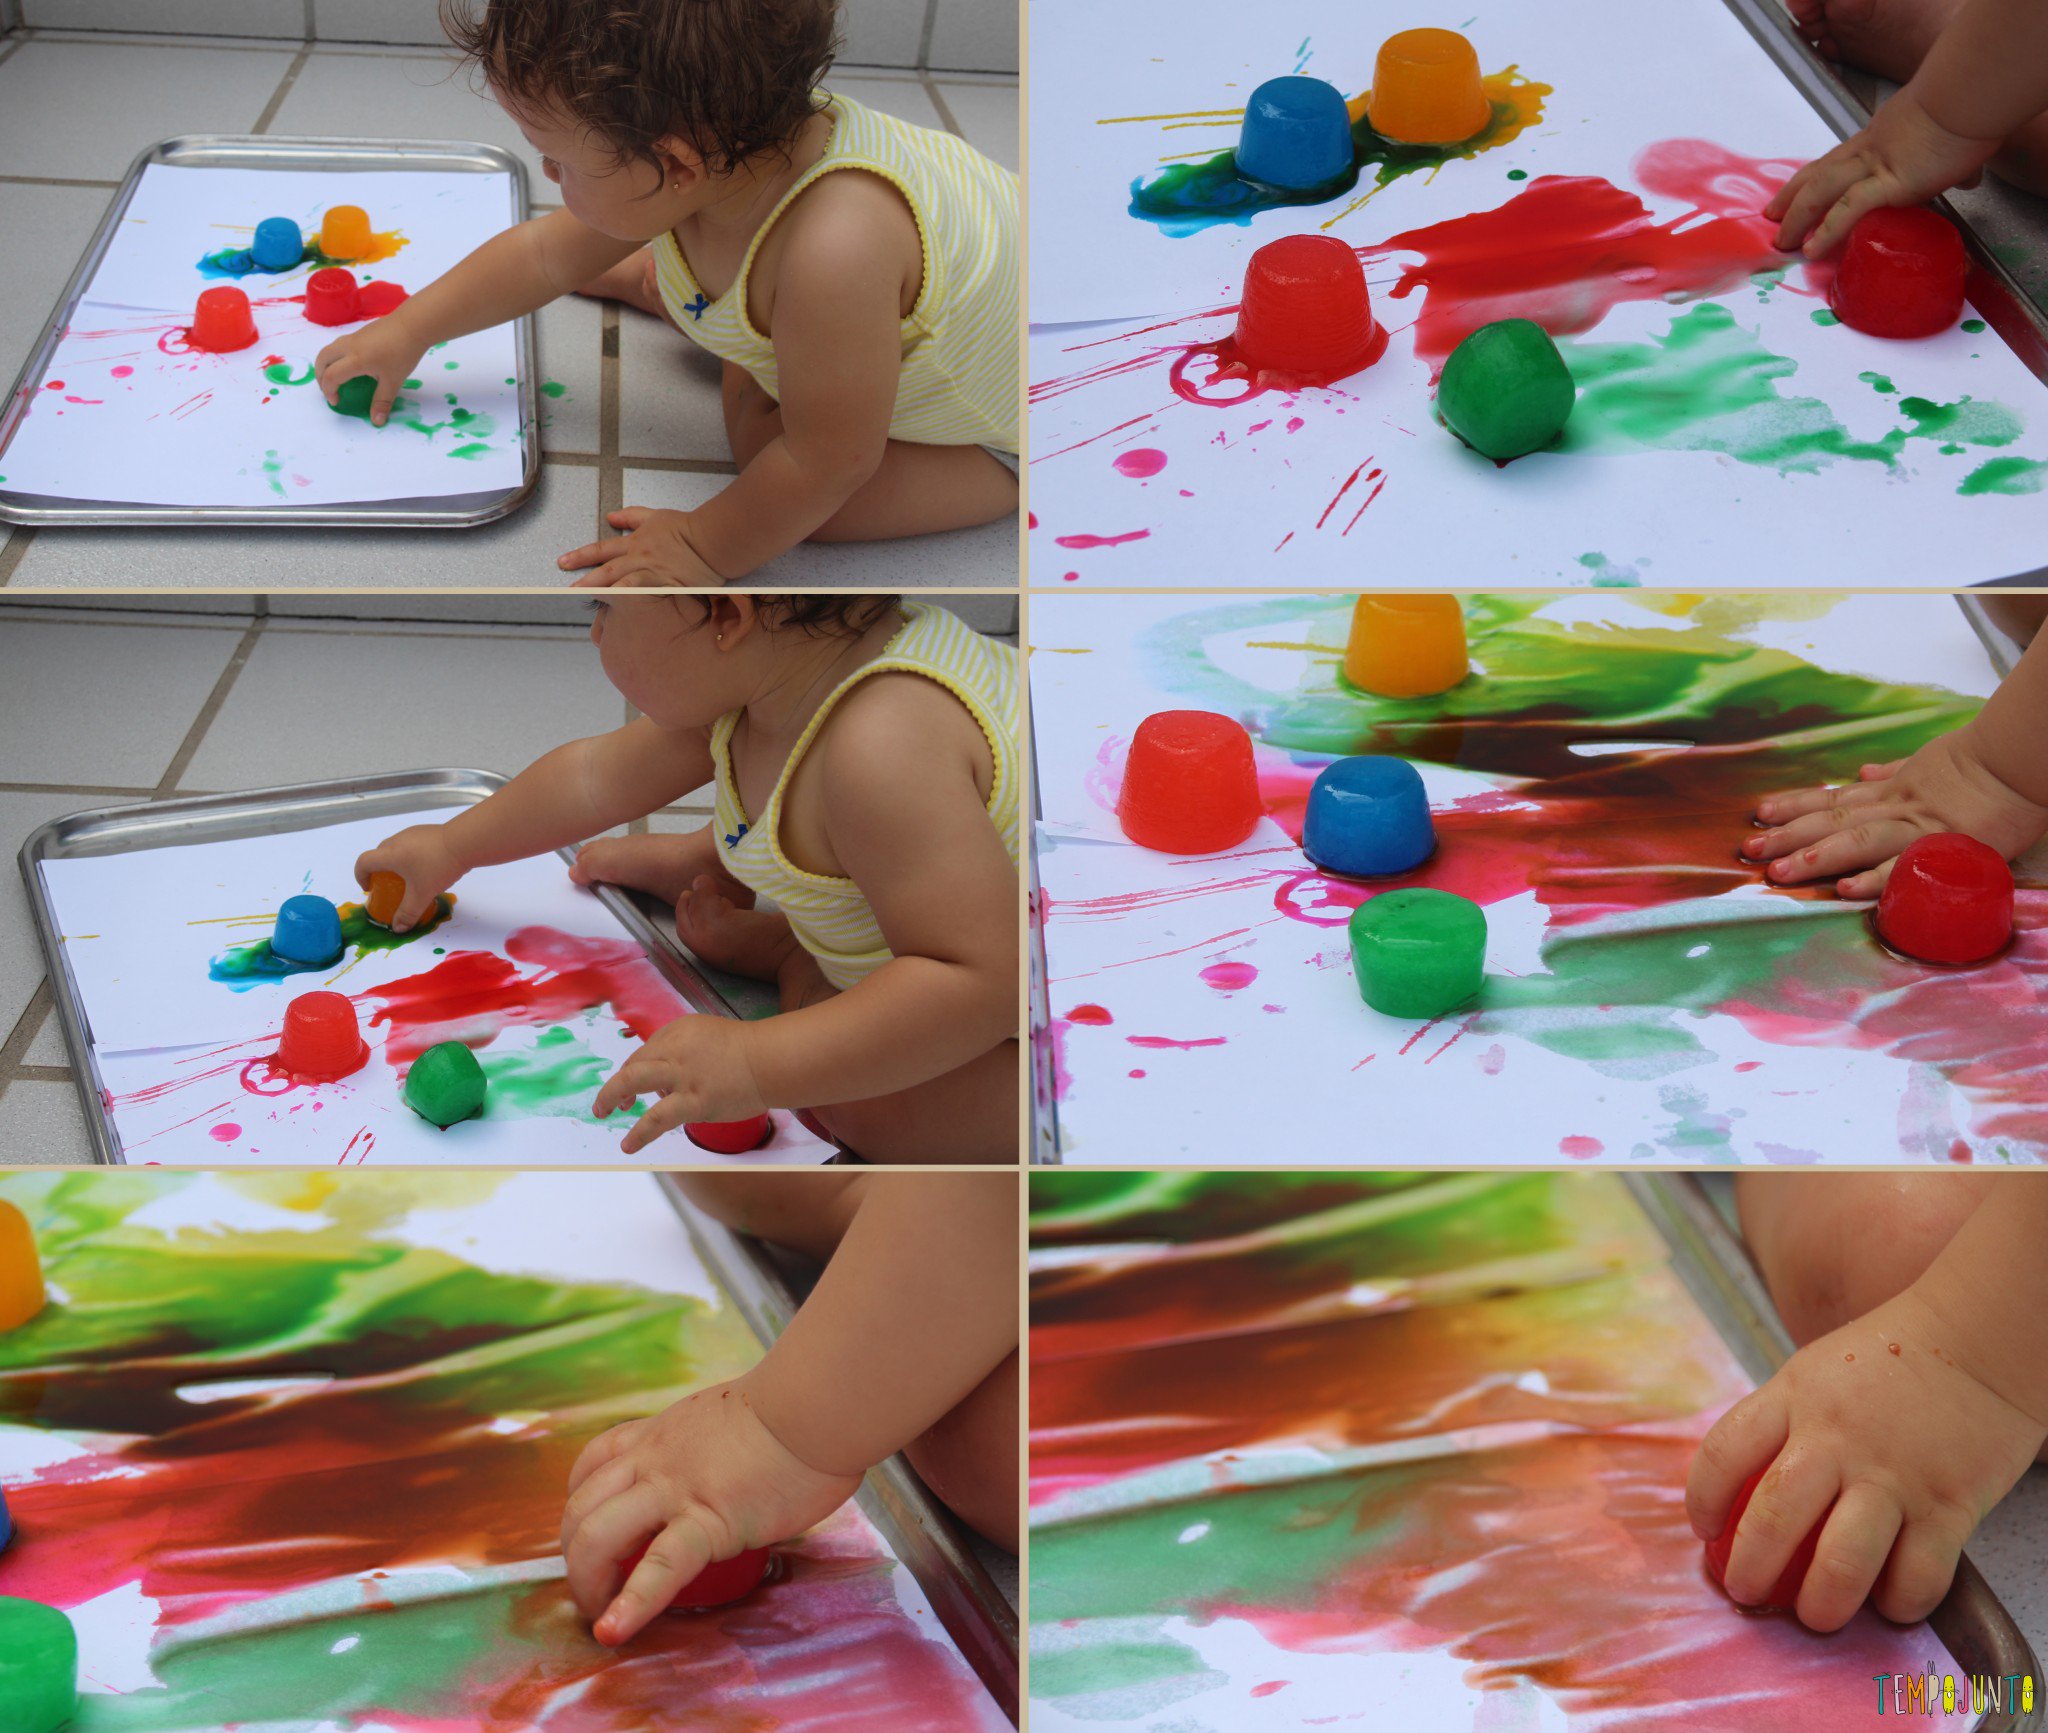 Receitas de tintas comestíveis para que os pequenos possam brincar de pintar desde cedo.